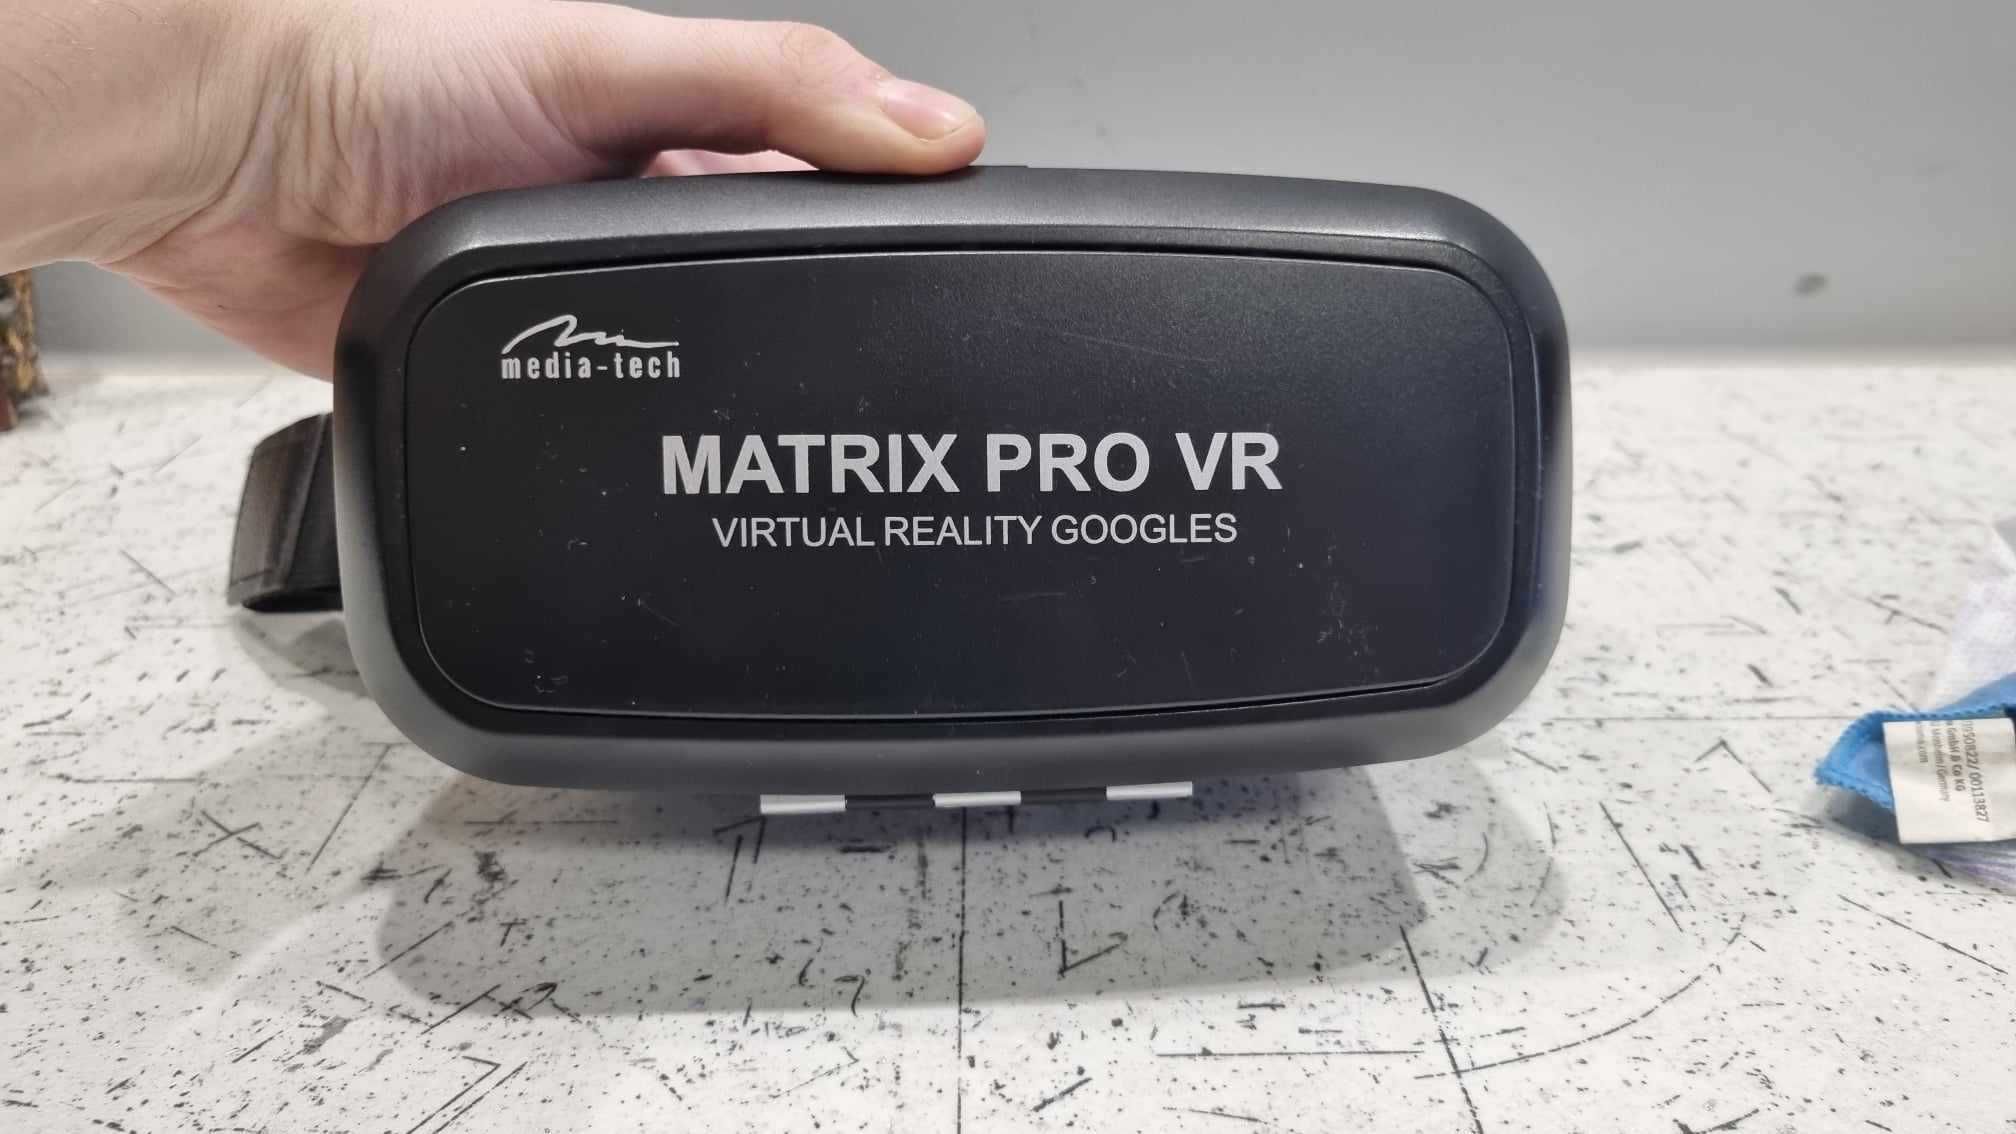 Mediatech PRO VR MT 5510